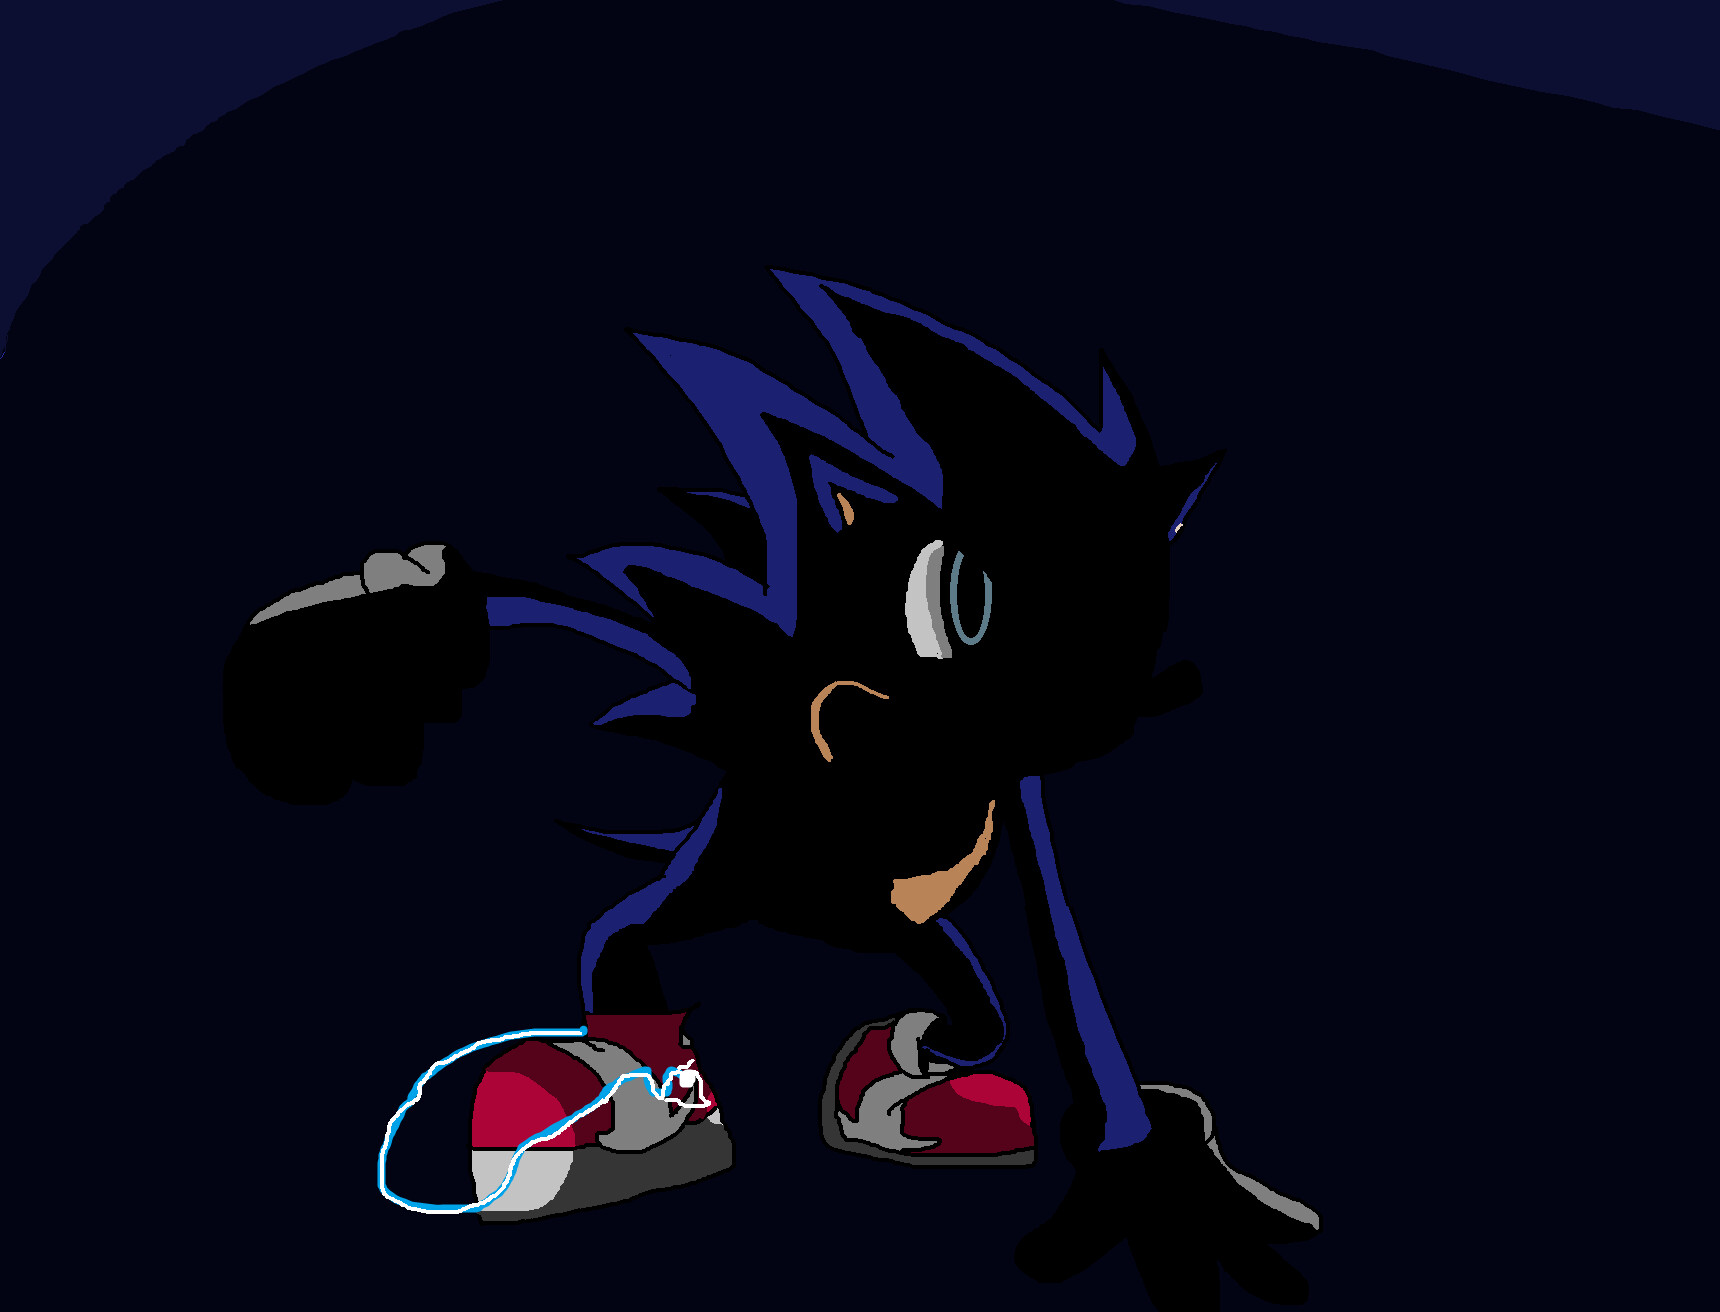 ArtStation - Dark Sonic